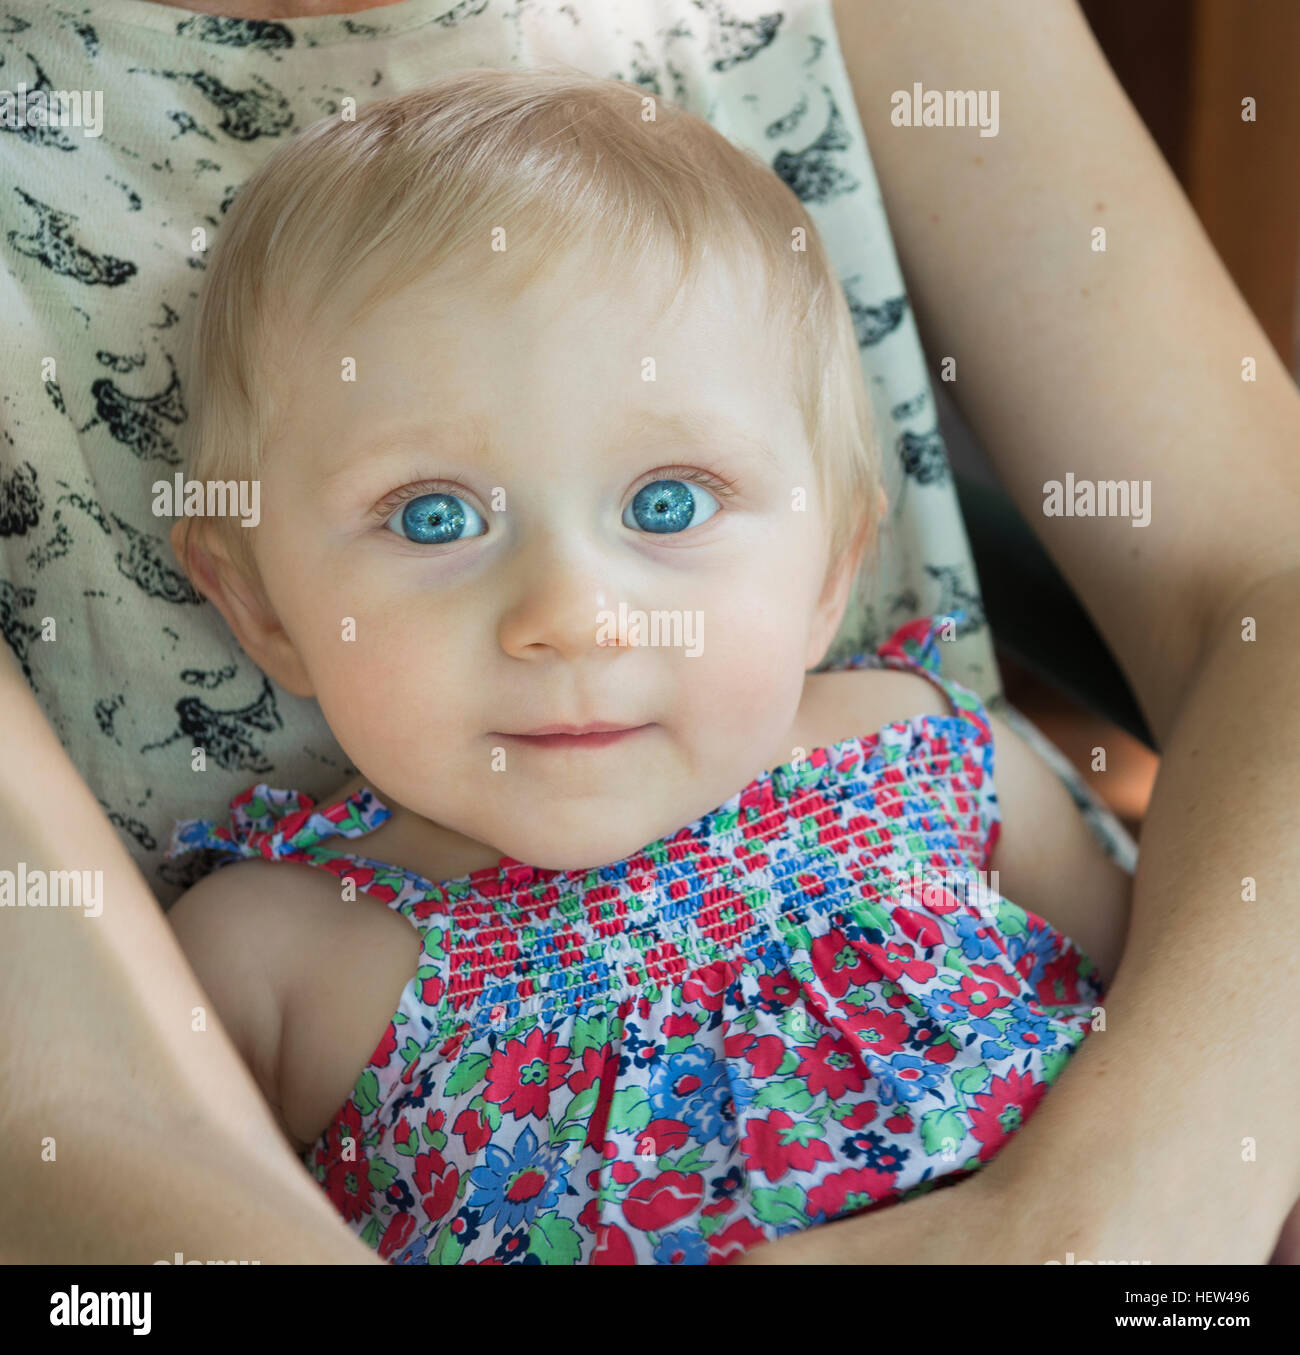 Portrait de petite fille en mère lap looking at camera Banque D'Images